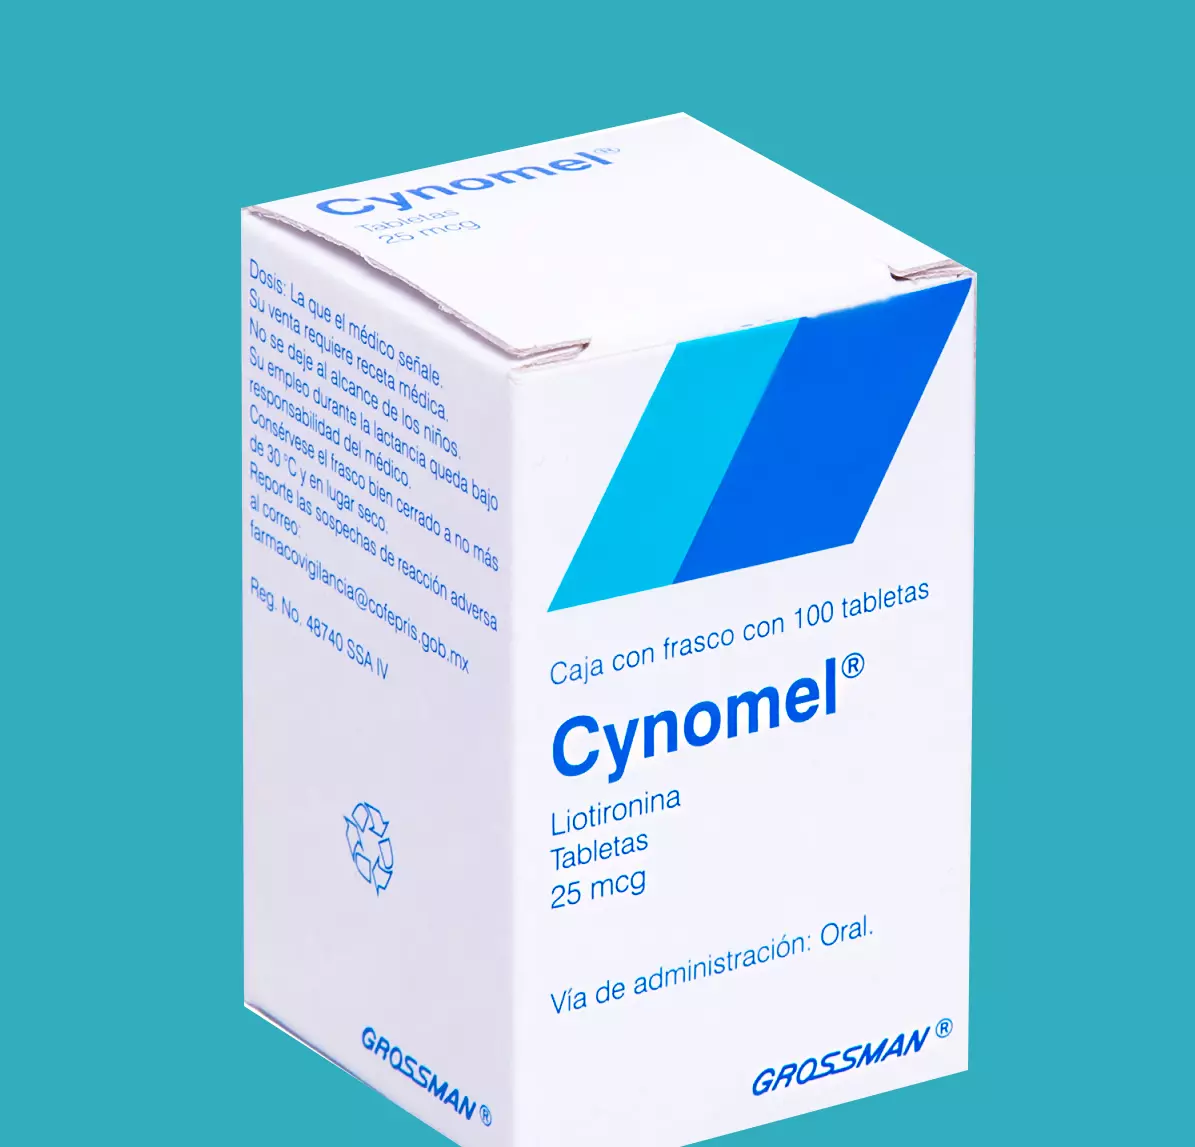 Những lưu ý khi dùng Cynomel (Liothyronine) điều trị suy giáp